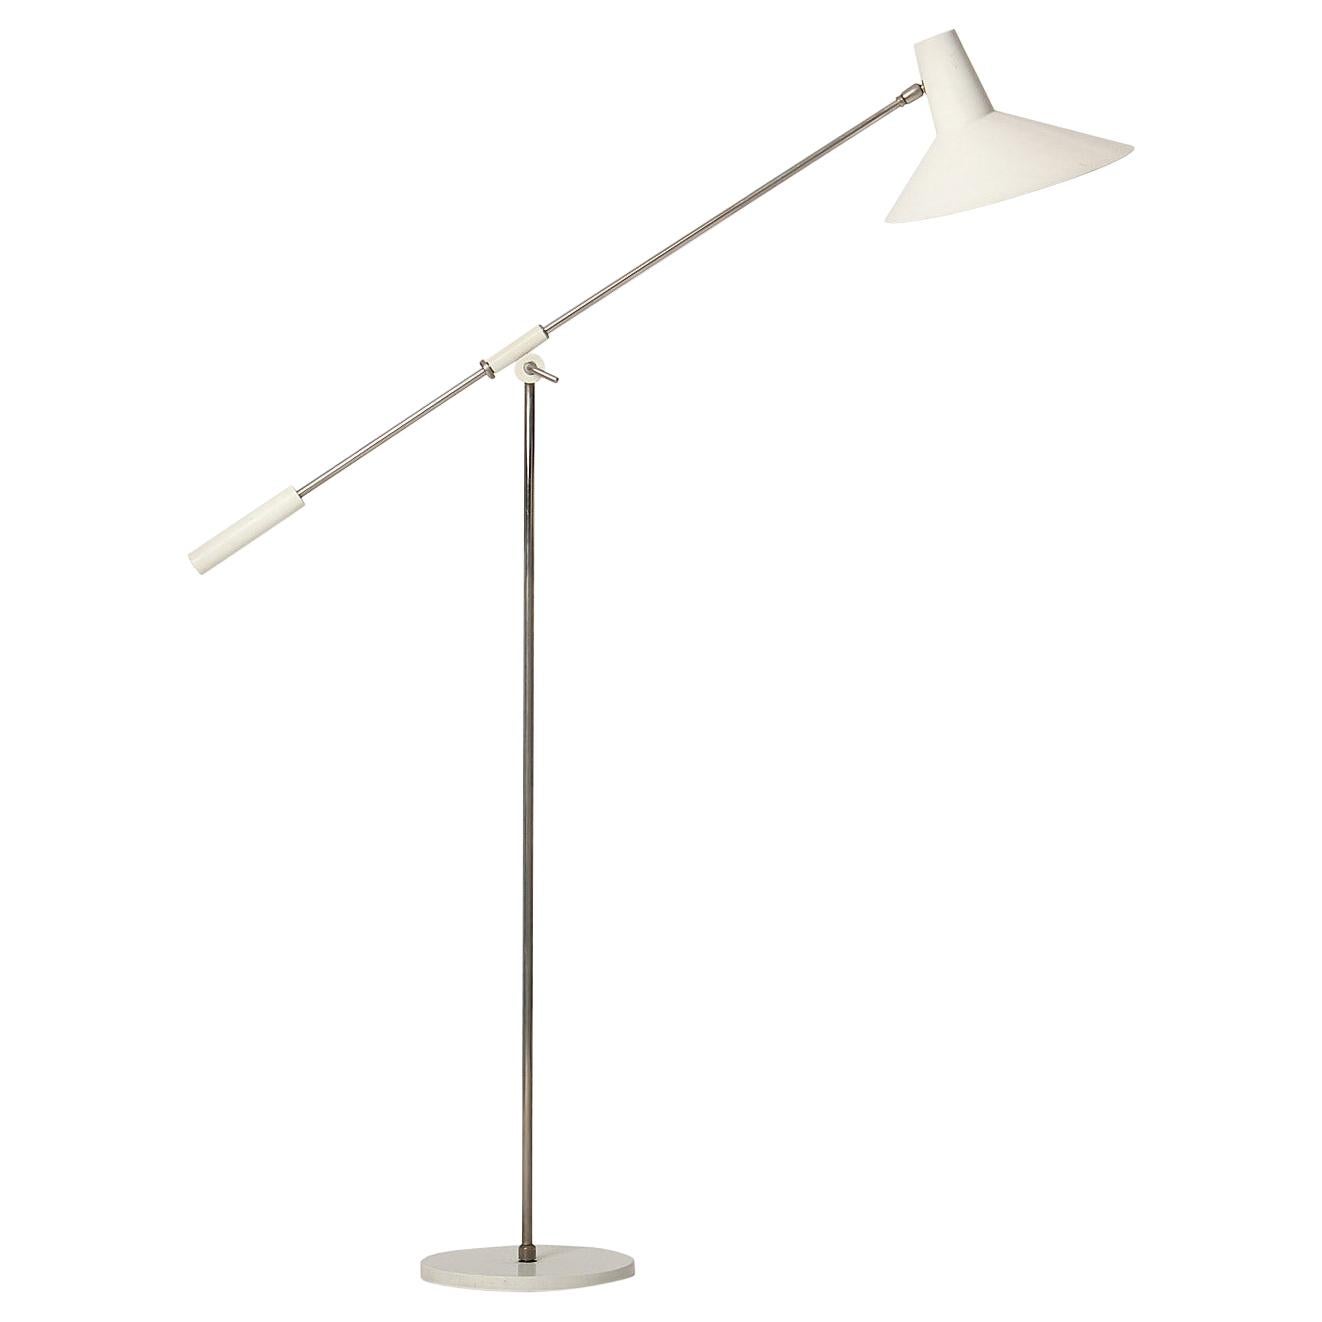 Italian Modernist Floor Lamp by Stilnovo